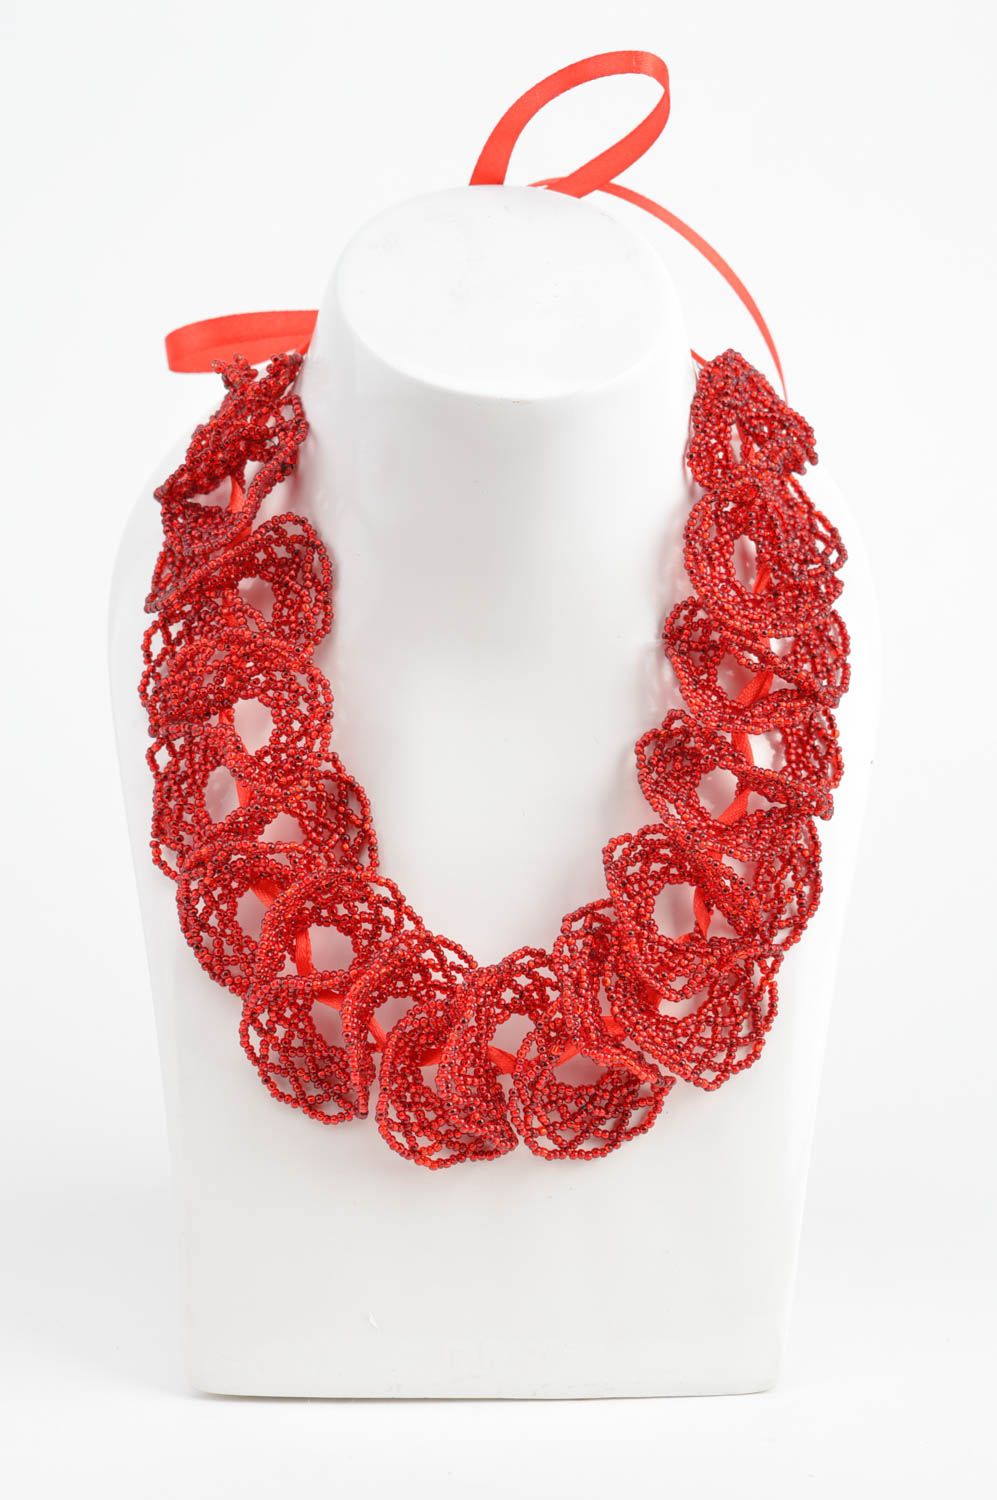 Ожерелье из бисера красное яркое ажурное красивое ручной работы на лентах  фото 3